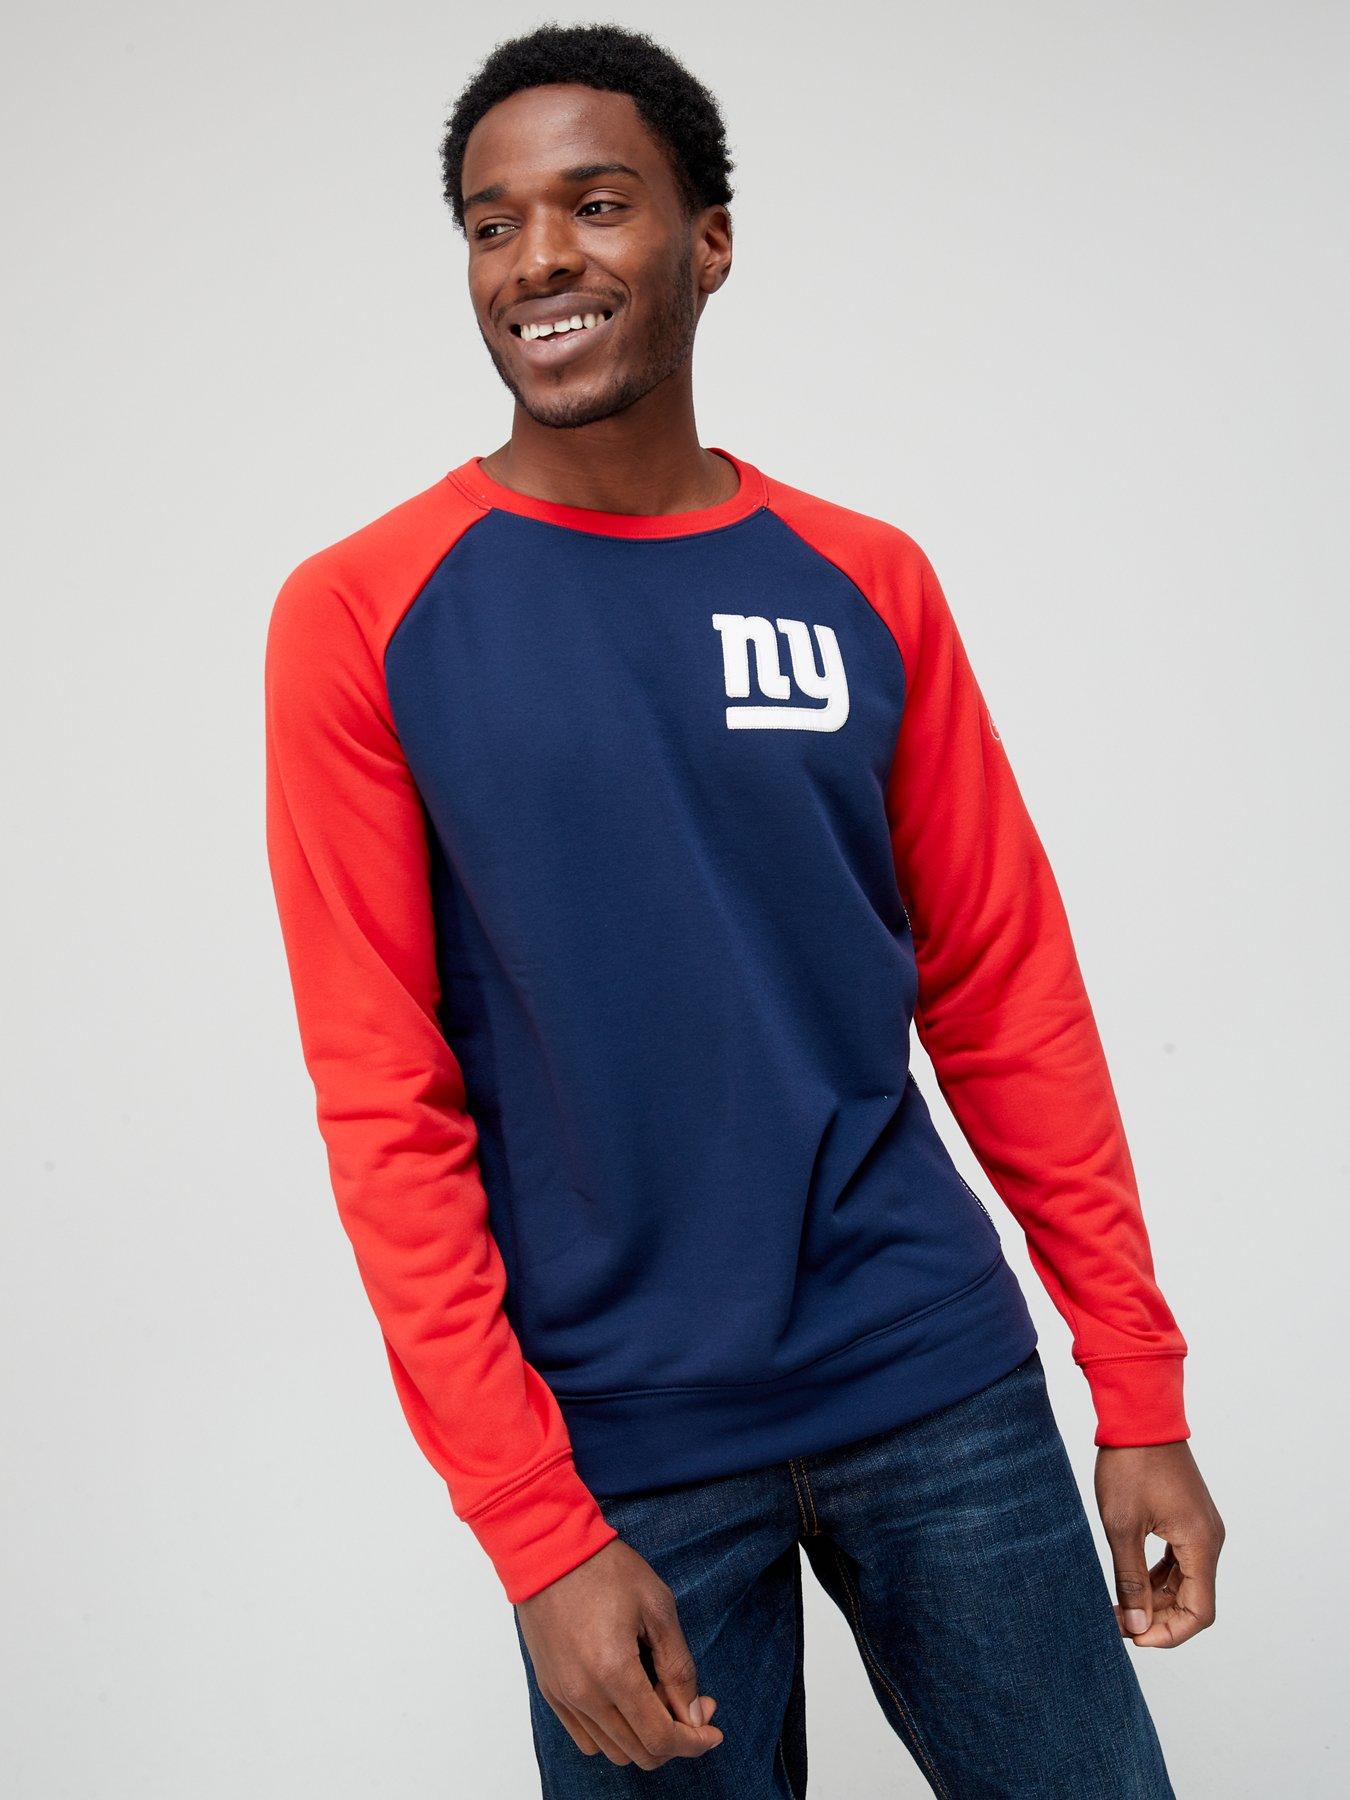 Hoodies & Sweatshirts x Nike NY Giants Sweatshirt - Navy/Red